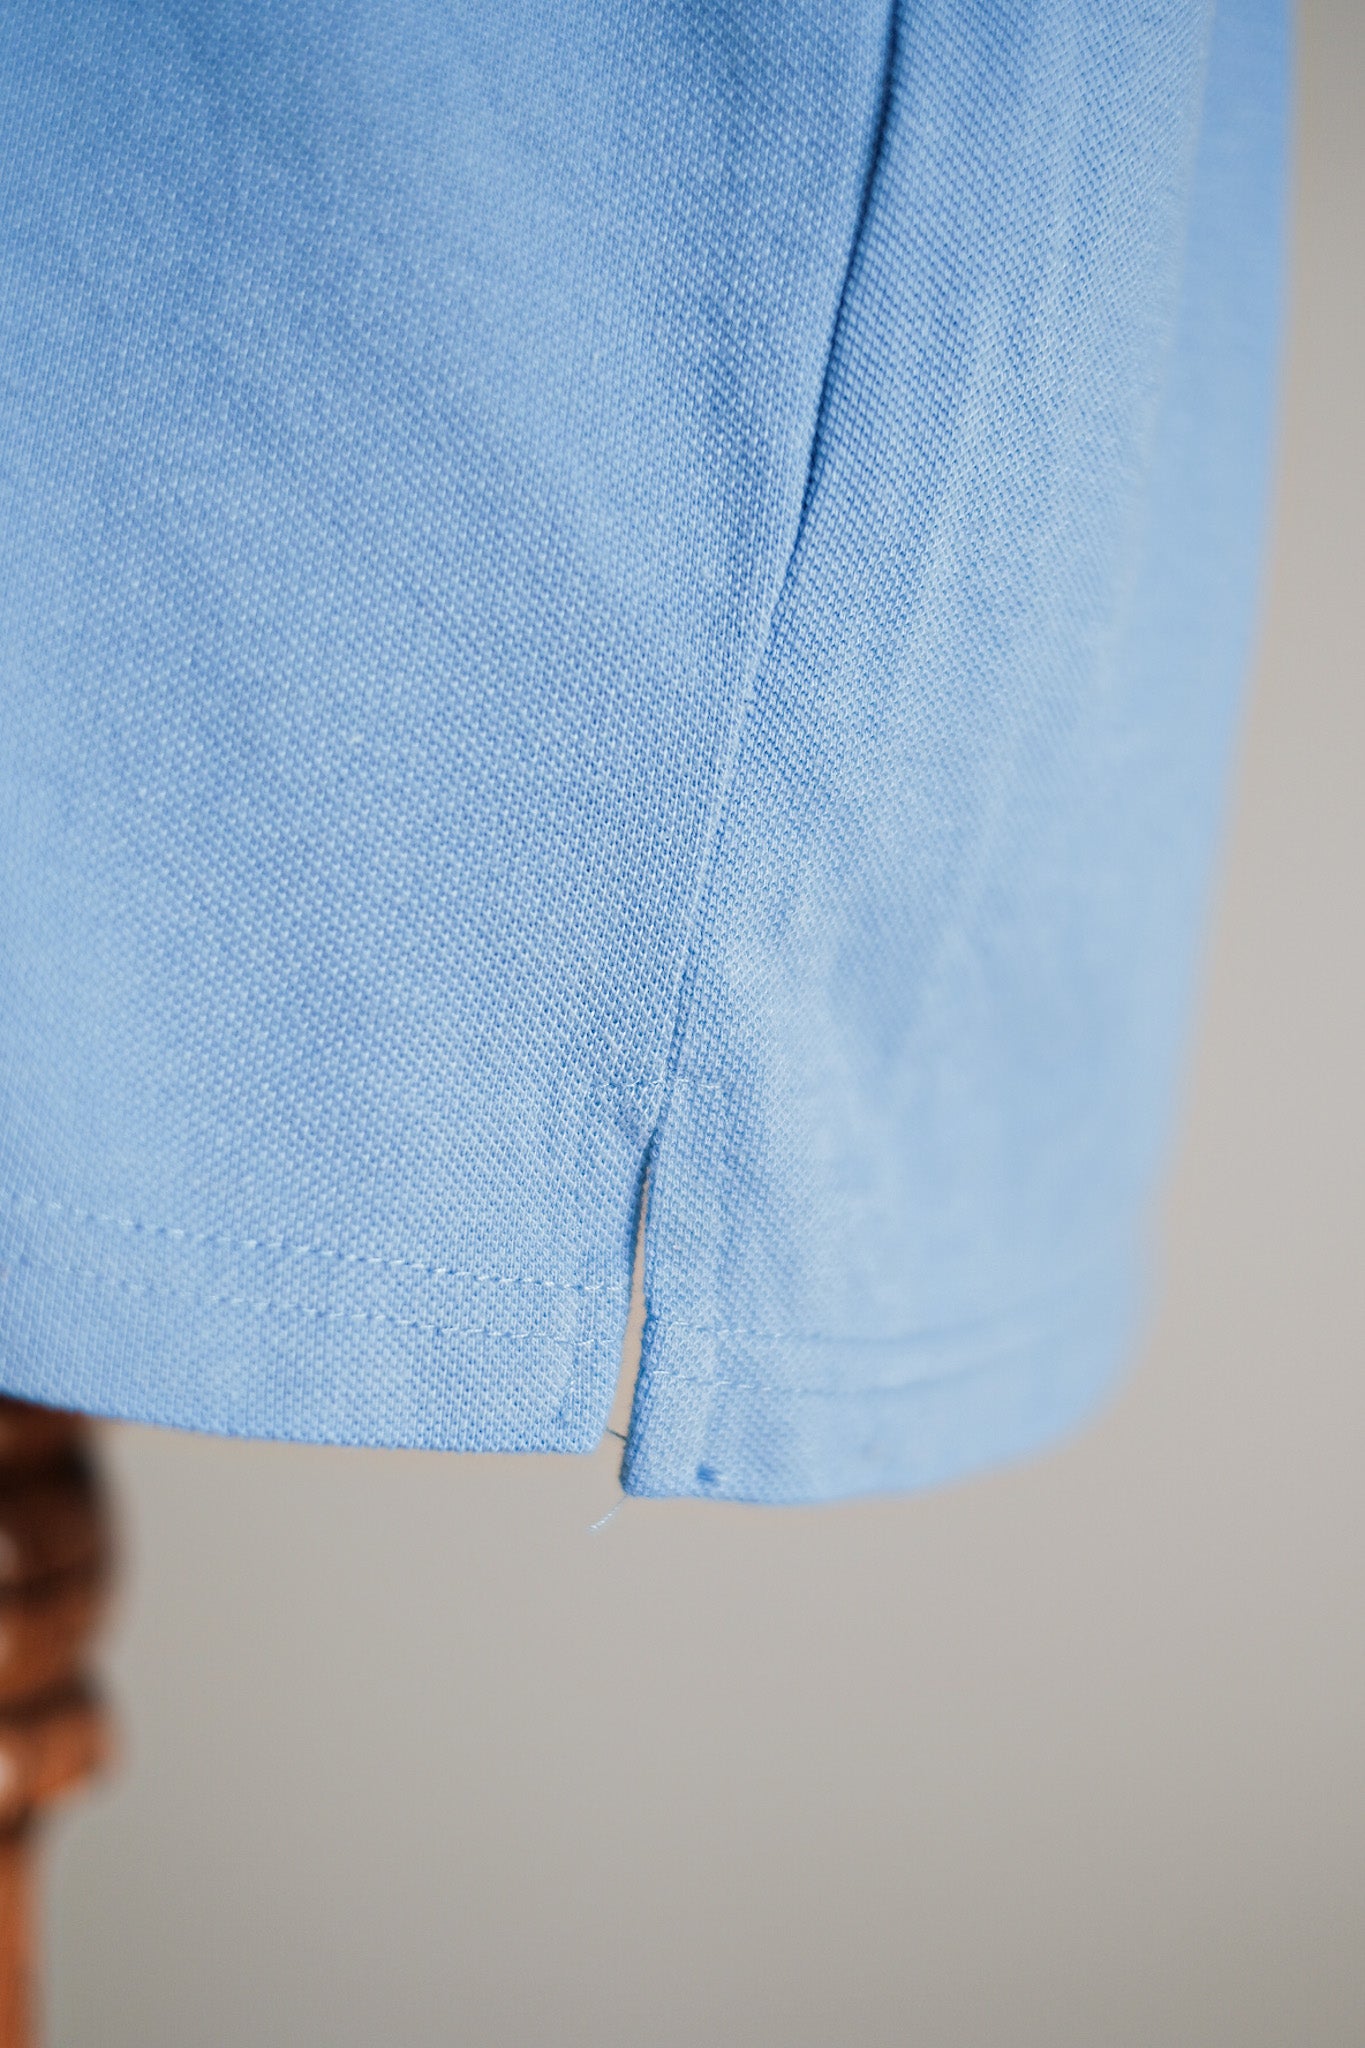 [〜90年代]顏色的lacoste s/s polo襯衫尺寸。7“淺藍色”